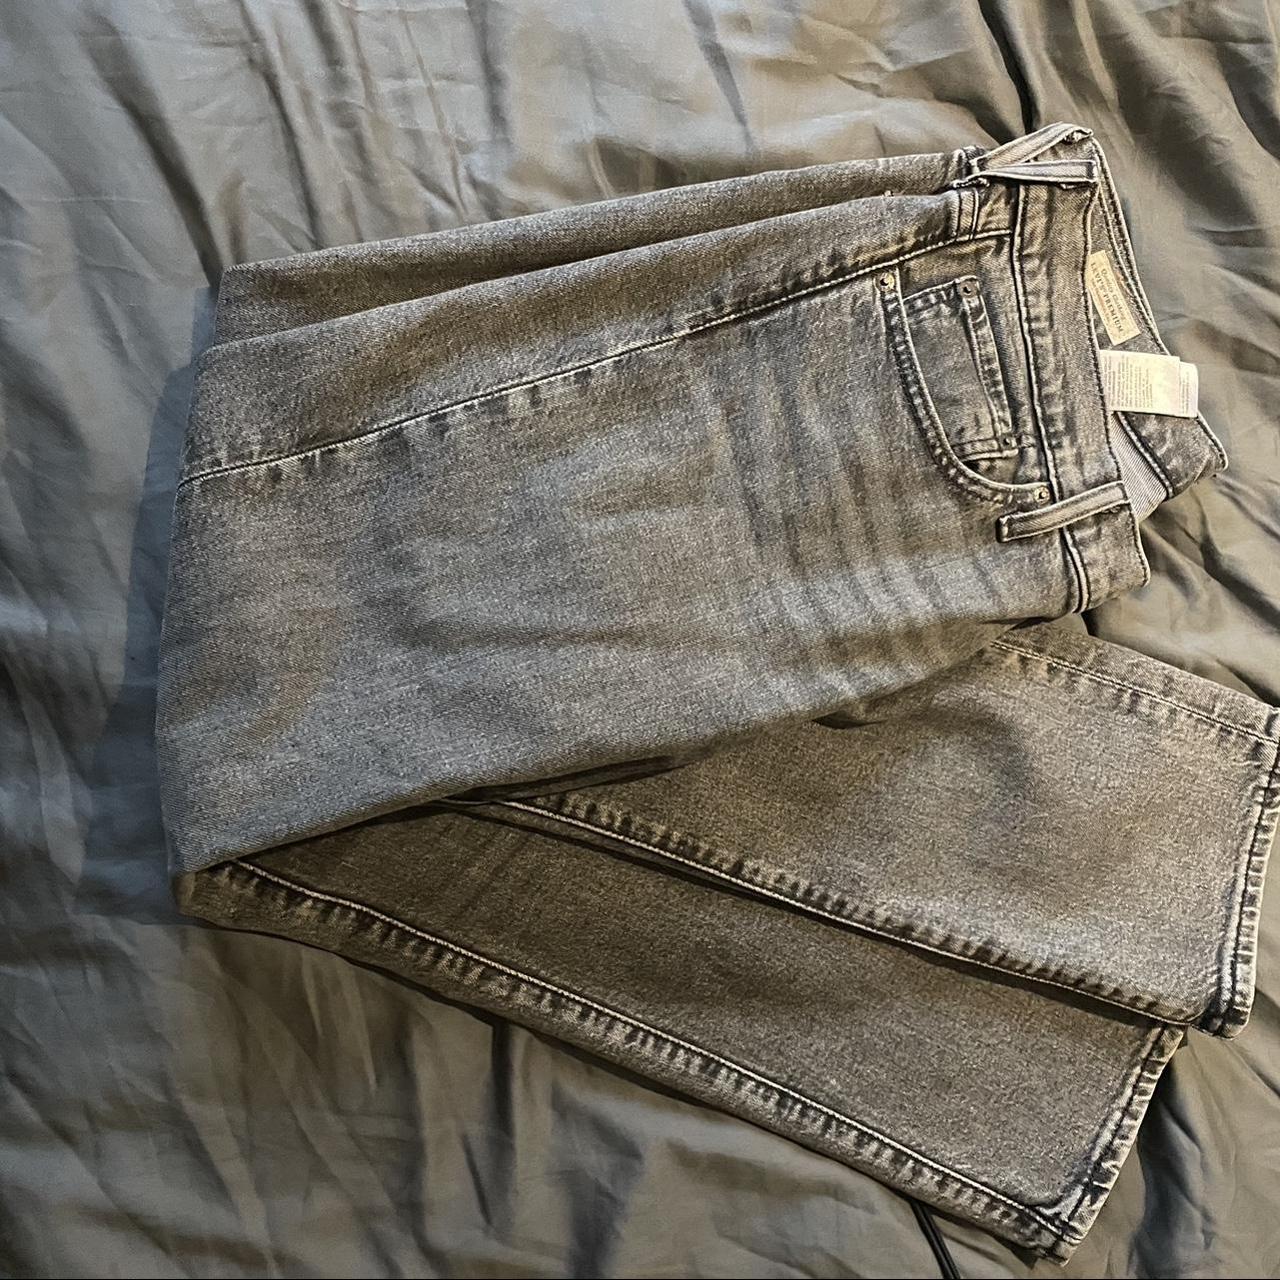 Levi’s grey 511 slim jeans 32x30 Excellent condition - Depop